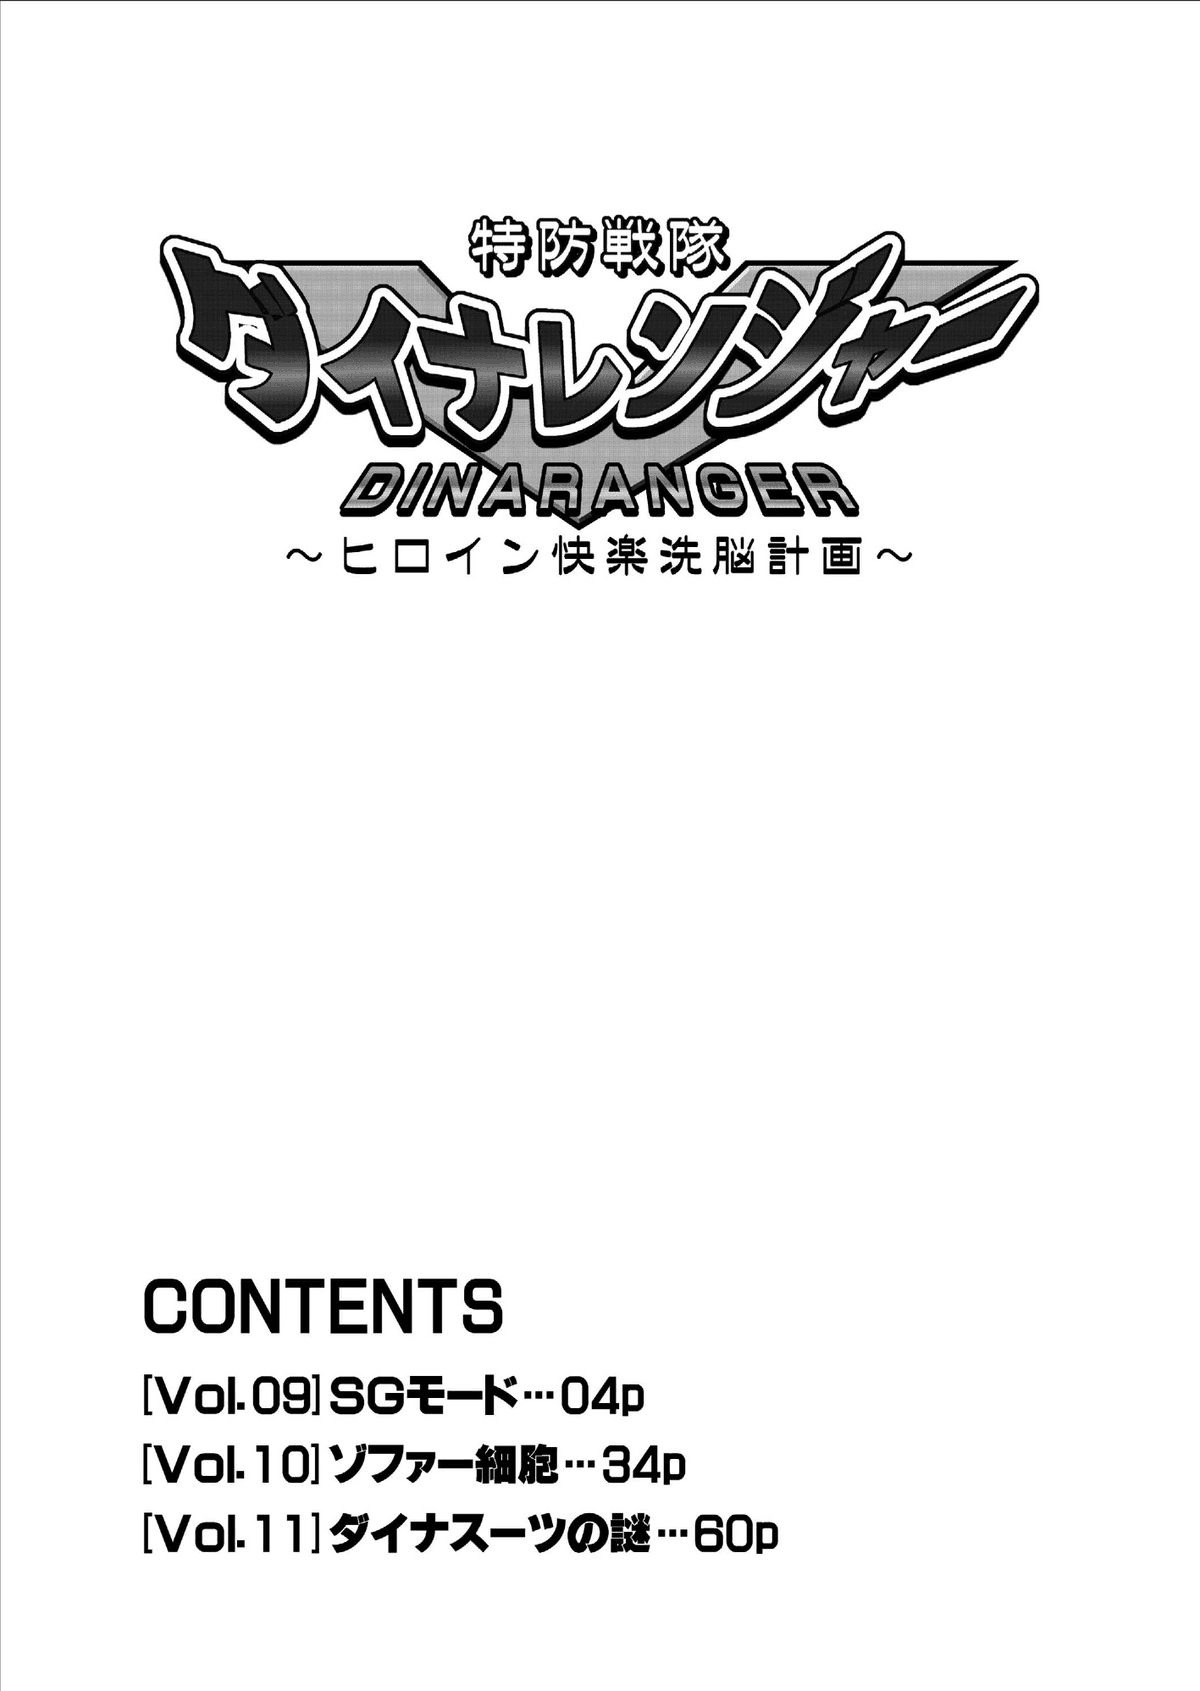 [Macxe's] Dinaranger Vol. 9-11 [English][SaHa] page 4 full